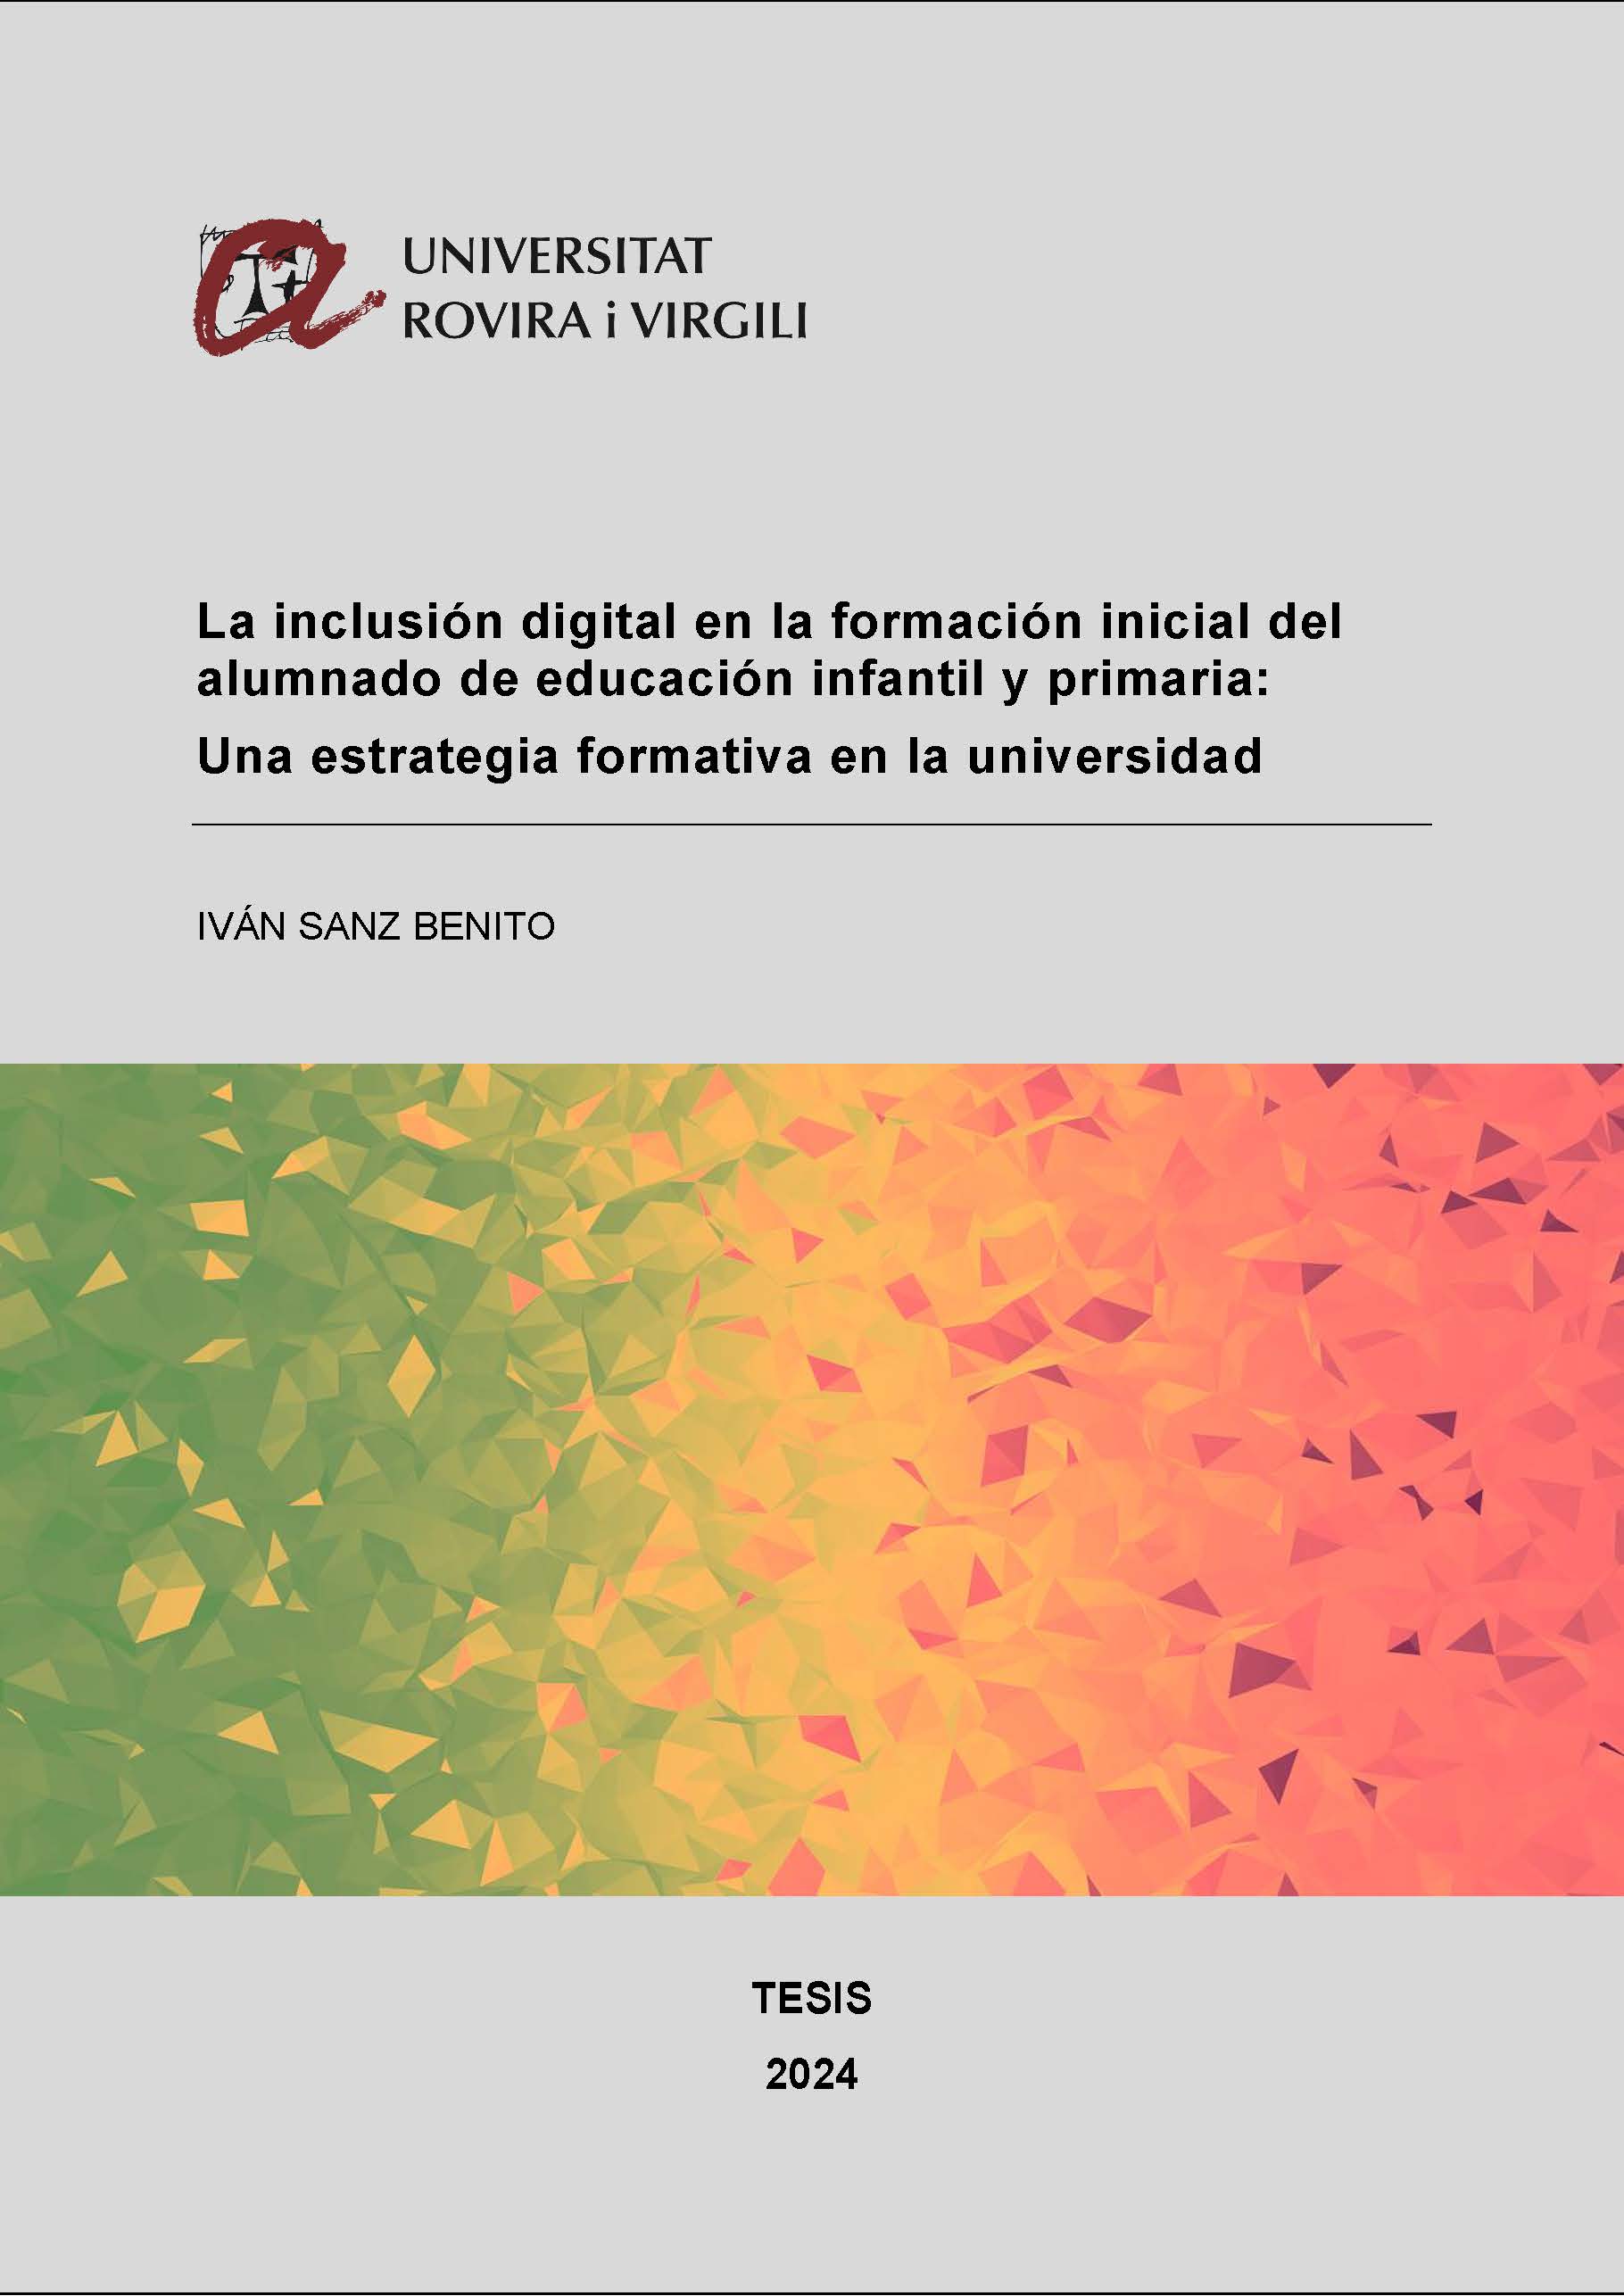 La inclusión digital en la formación inicial del alumnado de educación infantil y primaria: Una estrategia formativa en la universidad